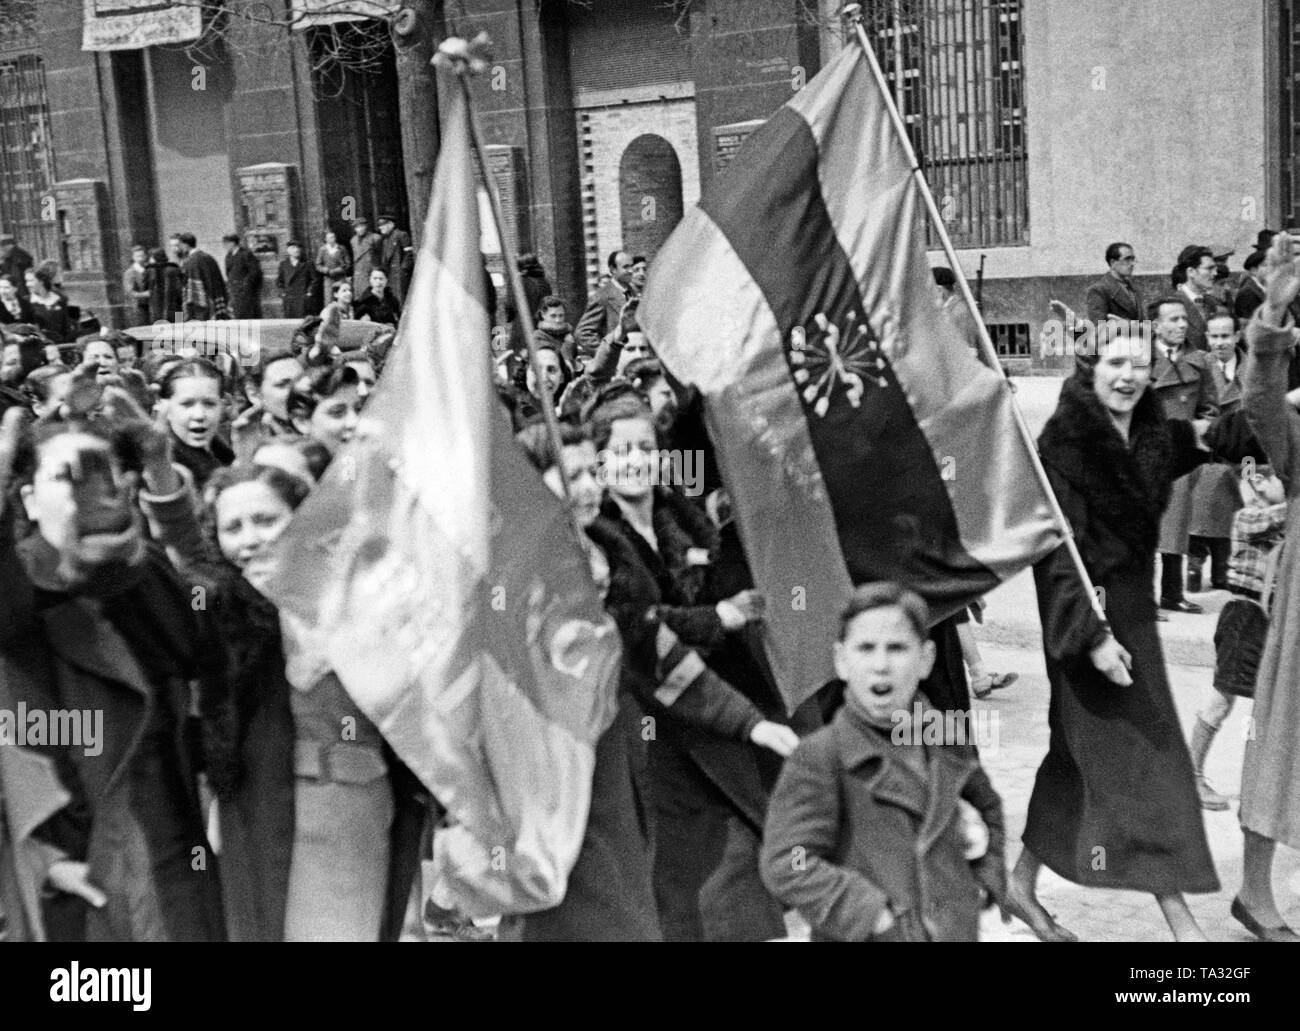 los-partidarios-del-general-franco-caminando-por-las-calles-de-madrid-a-finales-de-marzo-tras-la-entrada-de-las-tropas-de-franco-el-28-de-marzo-de-1939-las-mujeres-elevar-el-brazo-derecho-en-saludo-fascista-en-el-pabellon-rojo-azul-en-la-parte-delantera-son-el-yugo-y-las-flechas-como-simbolo-del-partido-fascista-falange-espanola-tradicionalista-de-las-jons-ta32gf.jpg